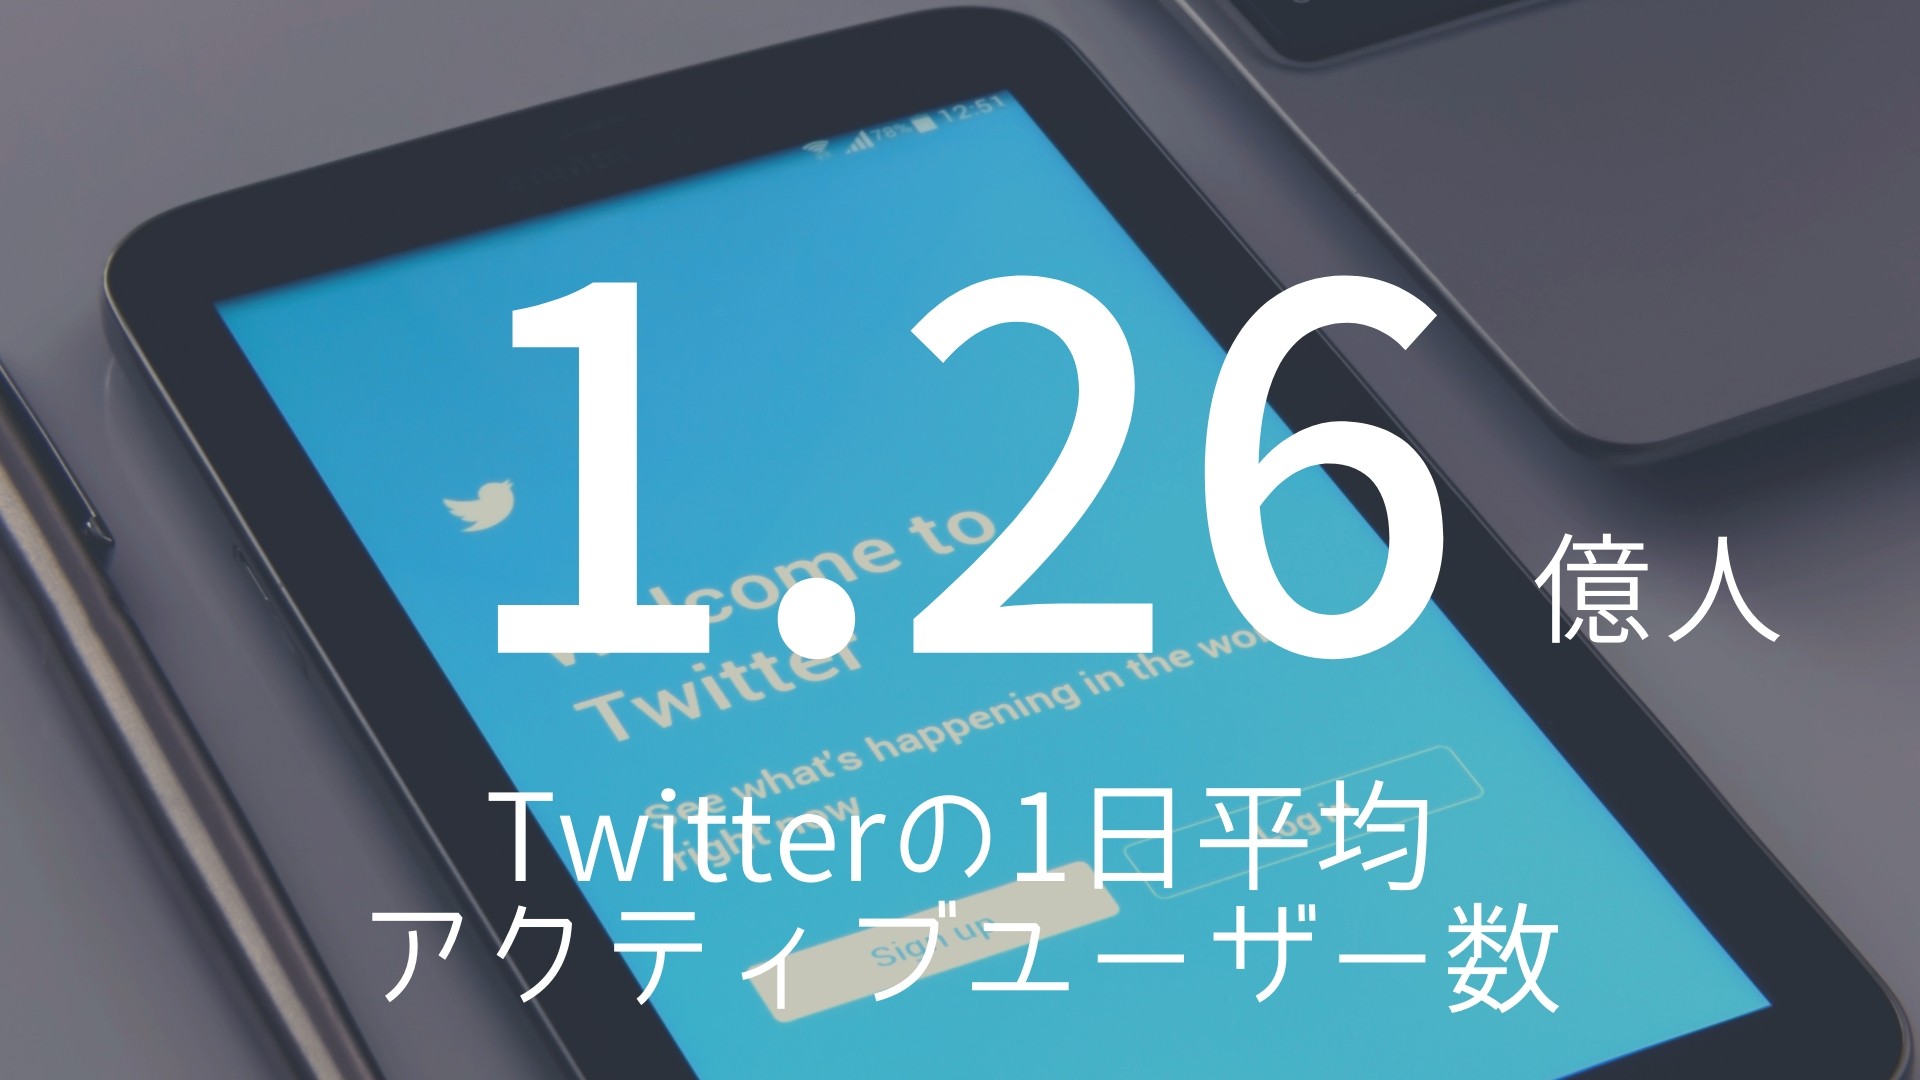 「1.26億人」 >>> Twitterの1日平均アクティブユーザー数。